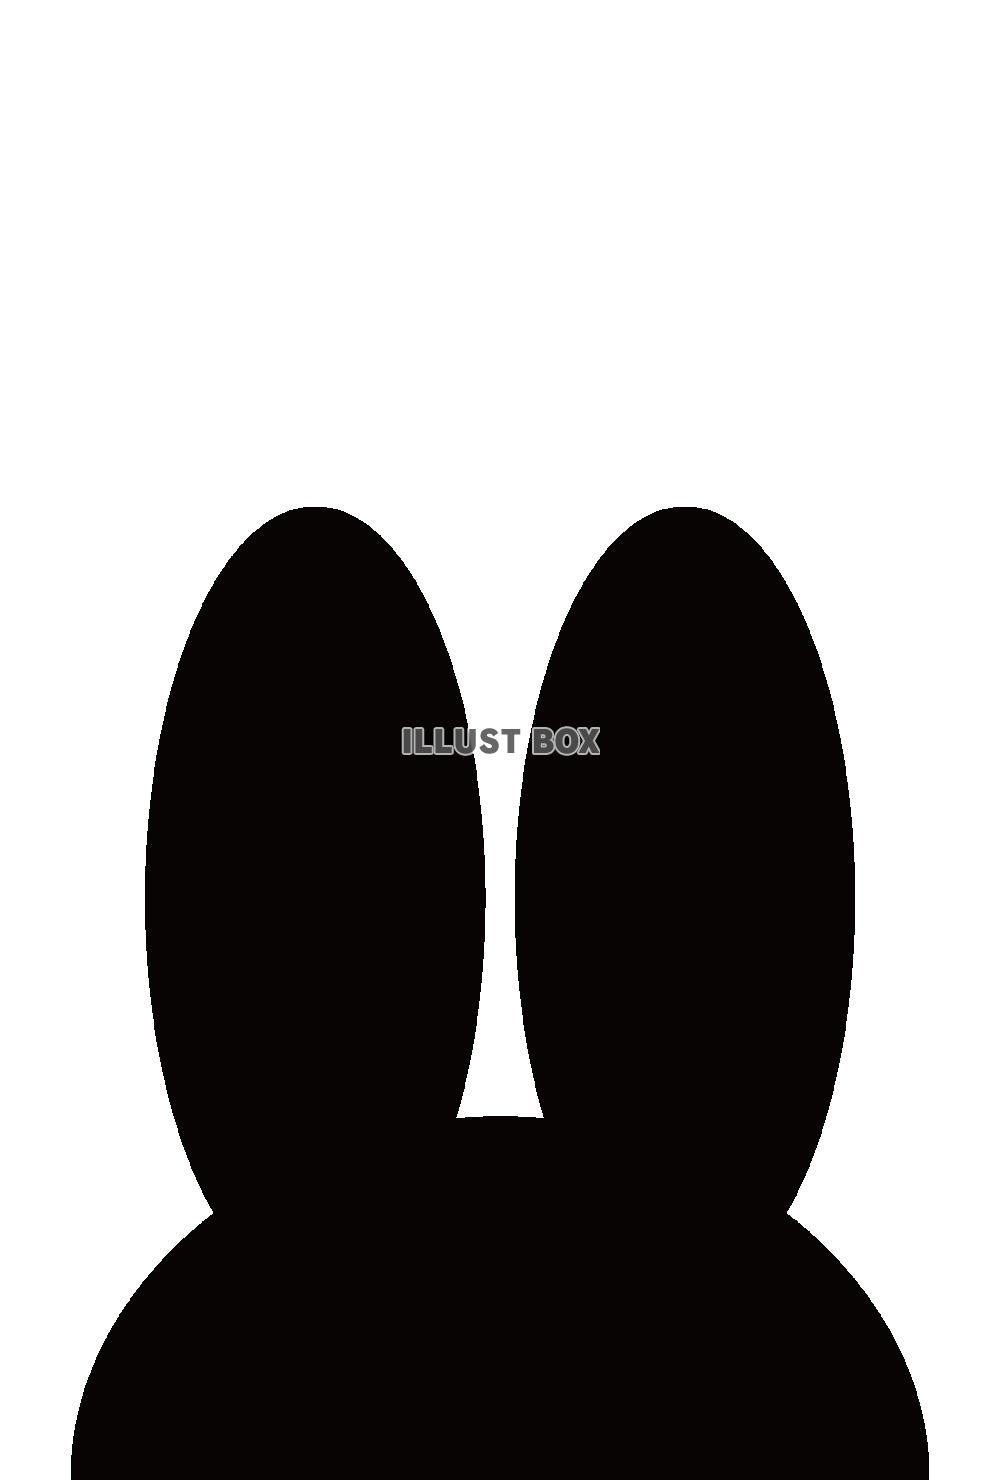 縦型の白黒のウサギ耳のイラスト